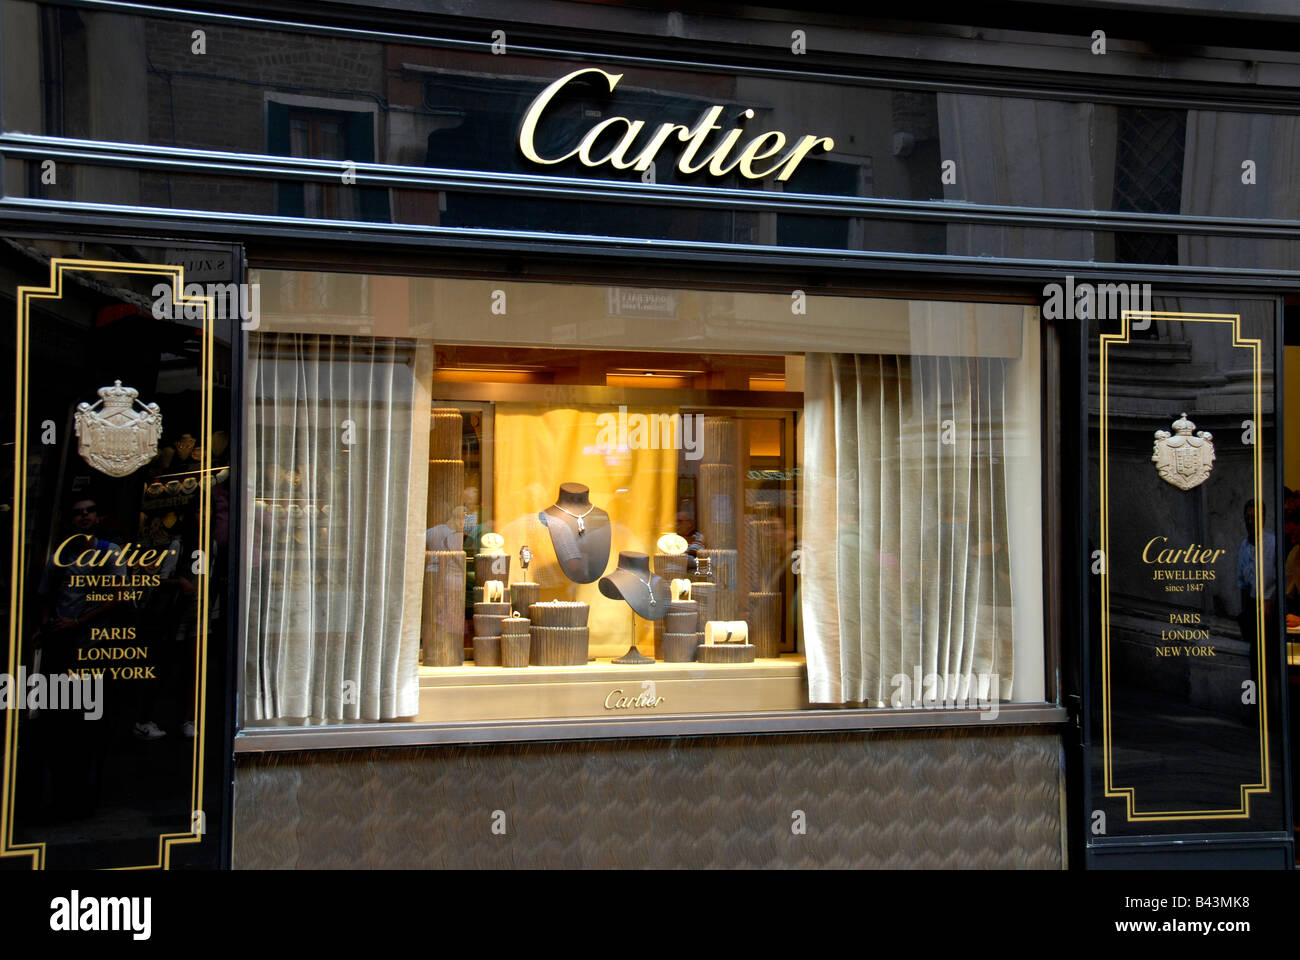 Cartier shop Venice Italy Stock Photo 